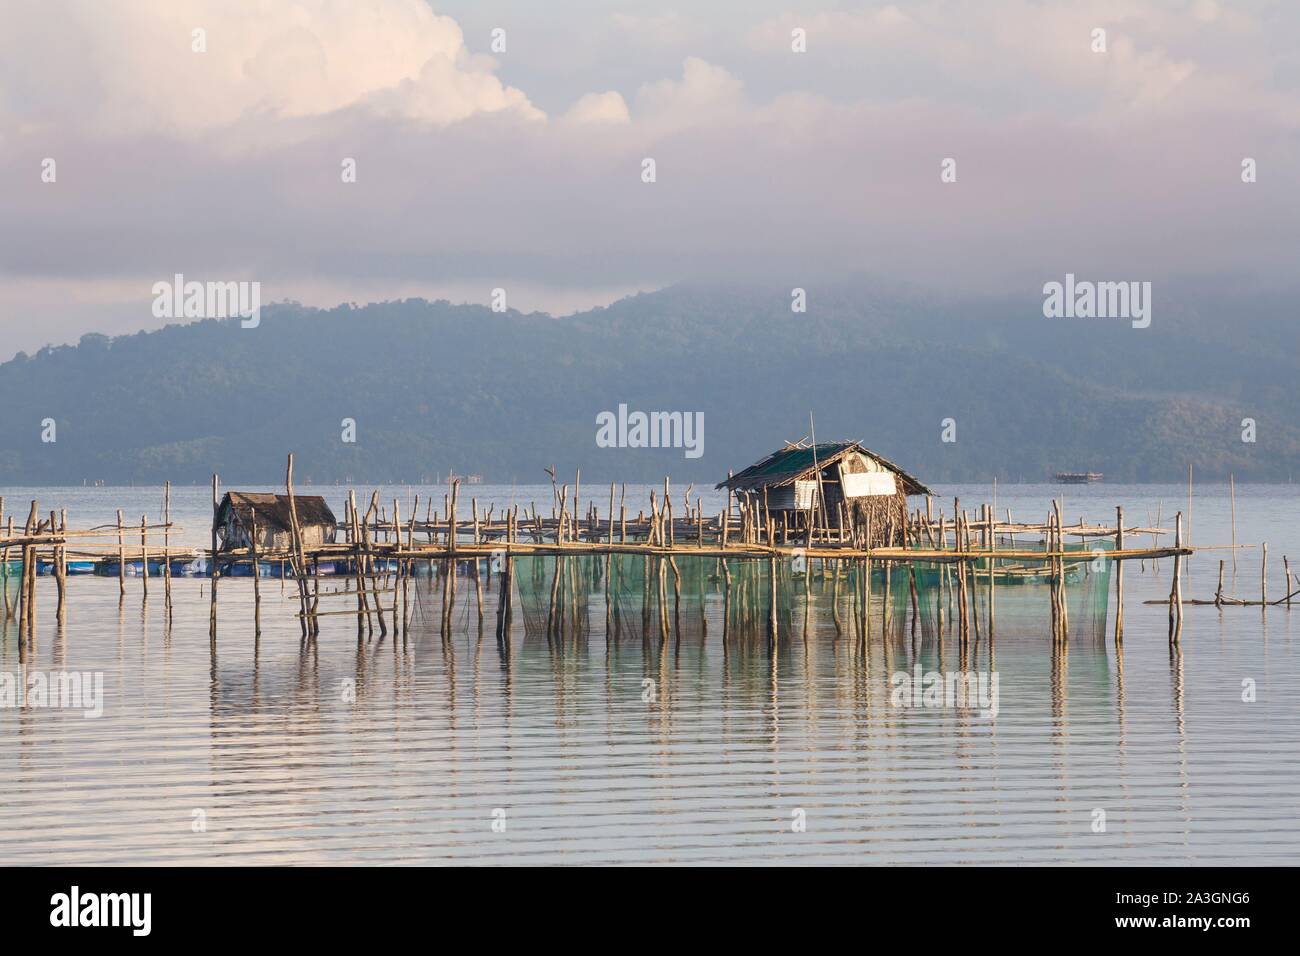 Philippines, Palawan, Malampaya Sound paysages terrestres et marins protégés, les engins de pêche typique avec une structure en bambou le maintien des filets de poisson Banque D'Images